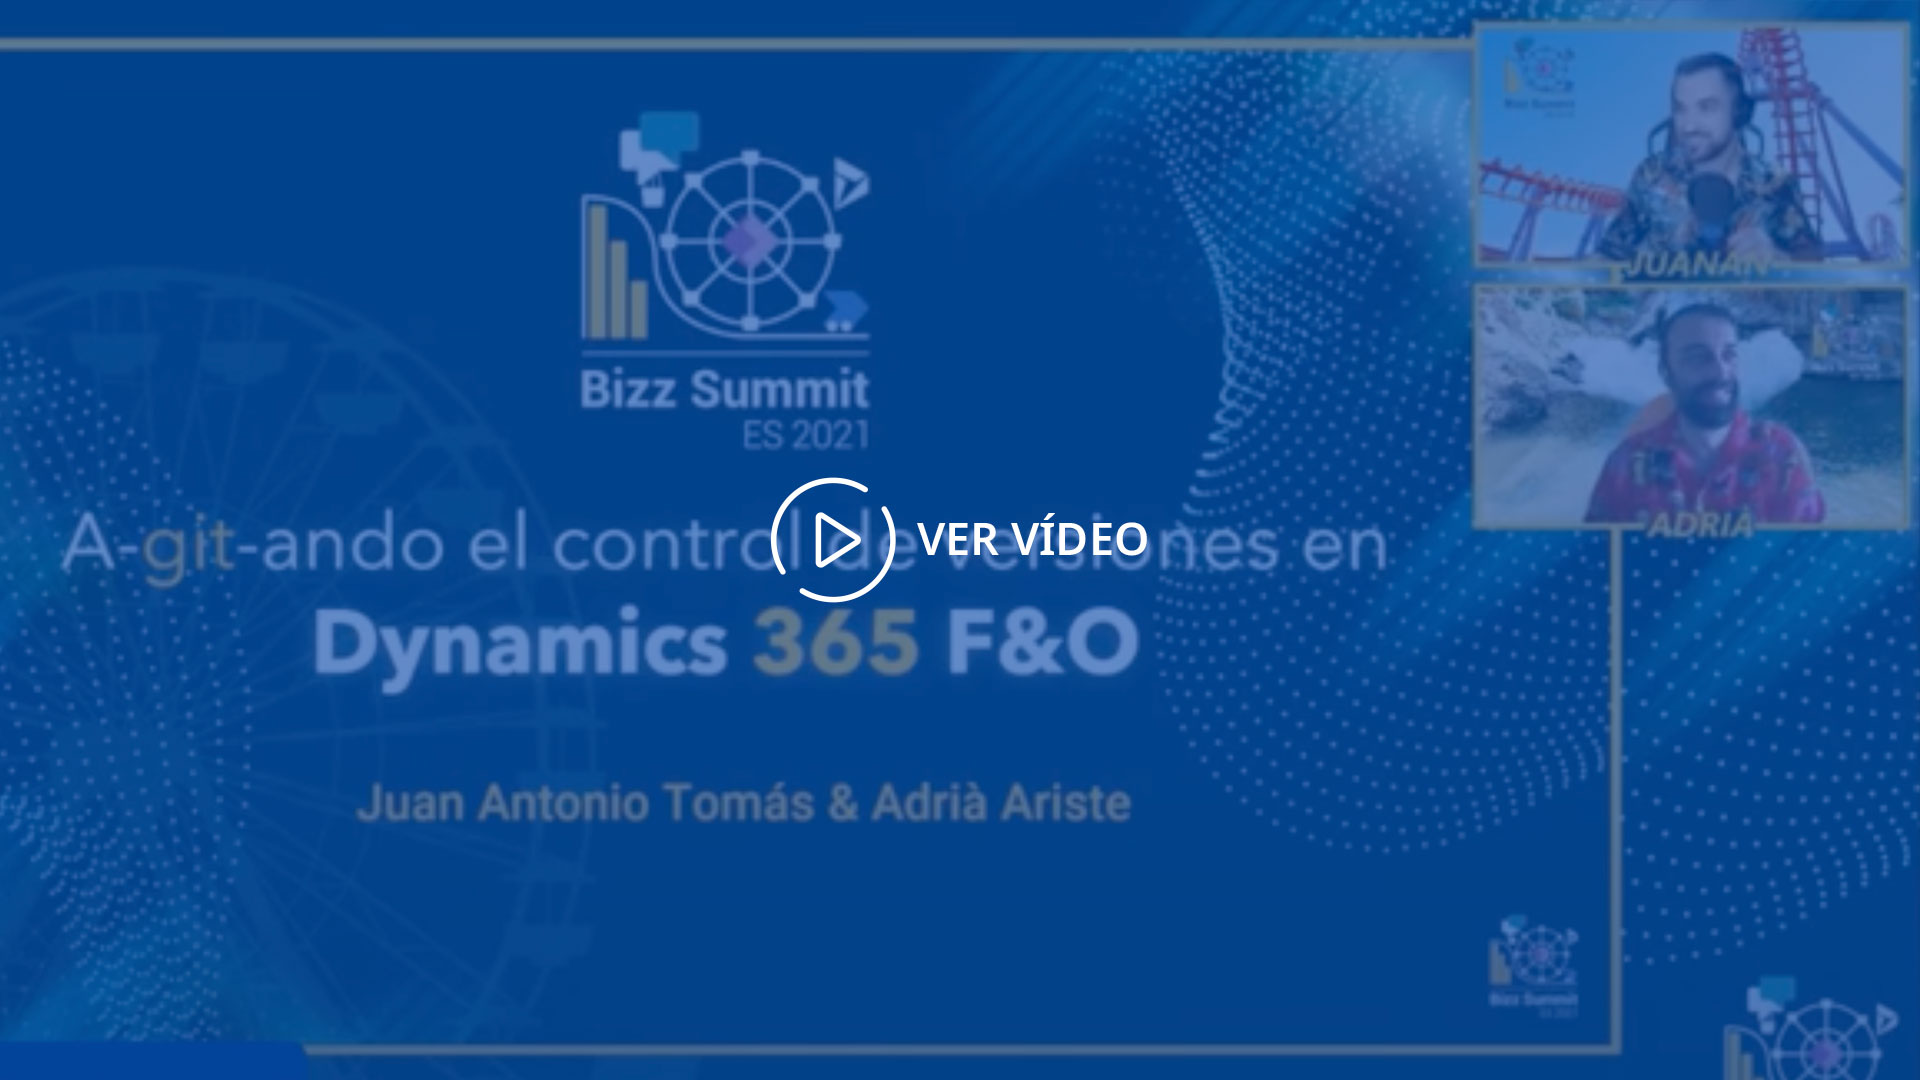 Bizz Summit ES 2021 Axazure